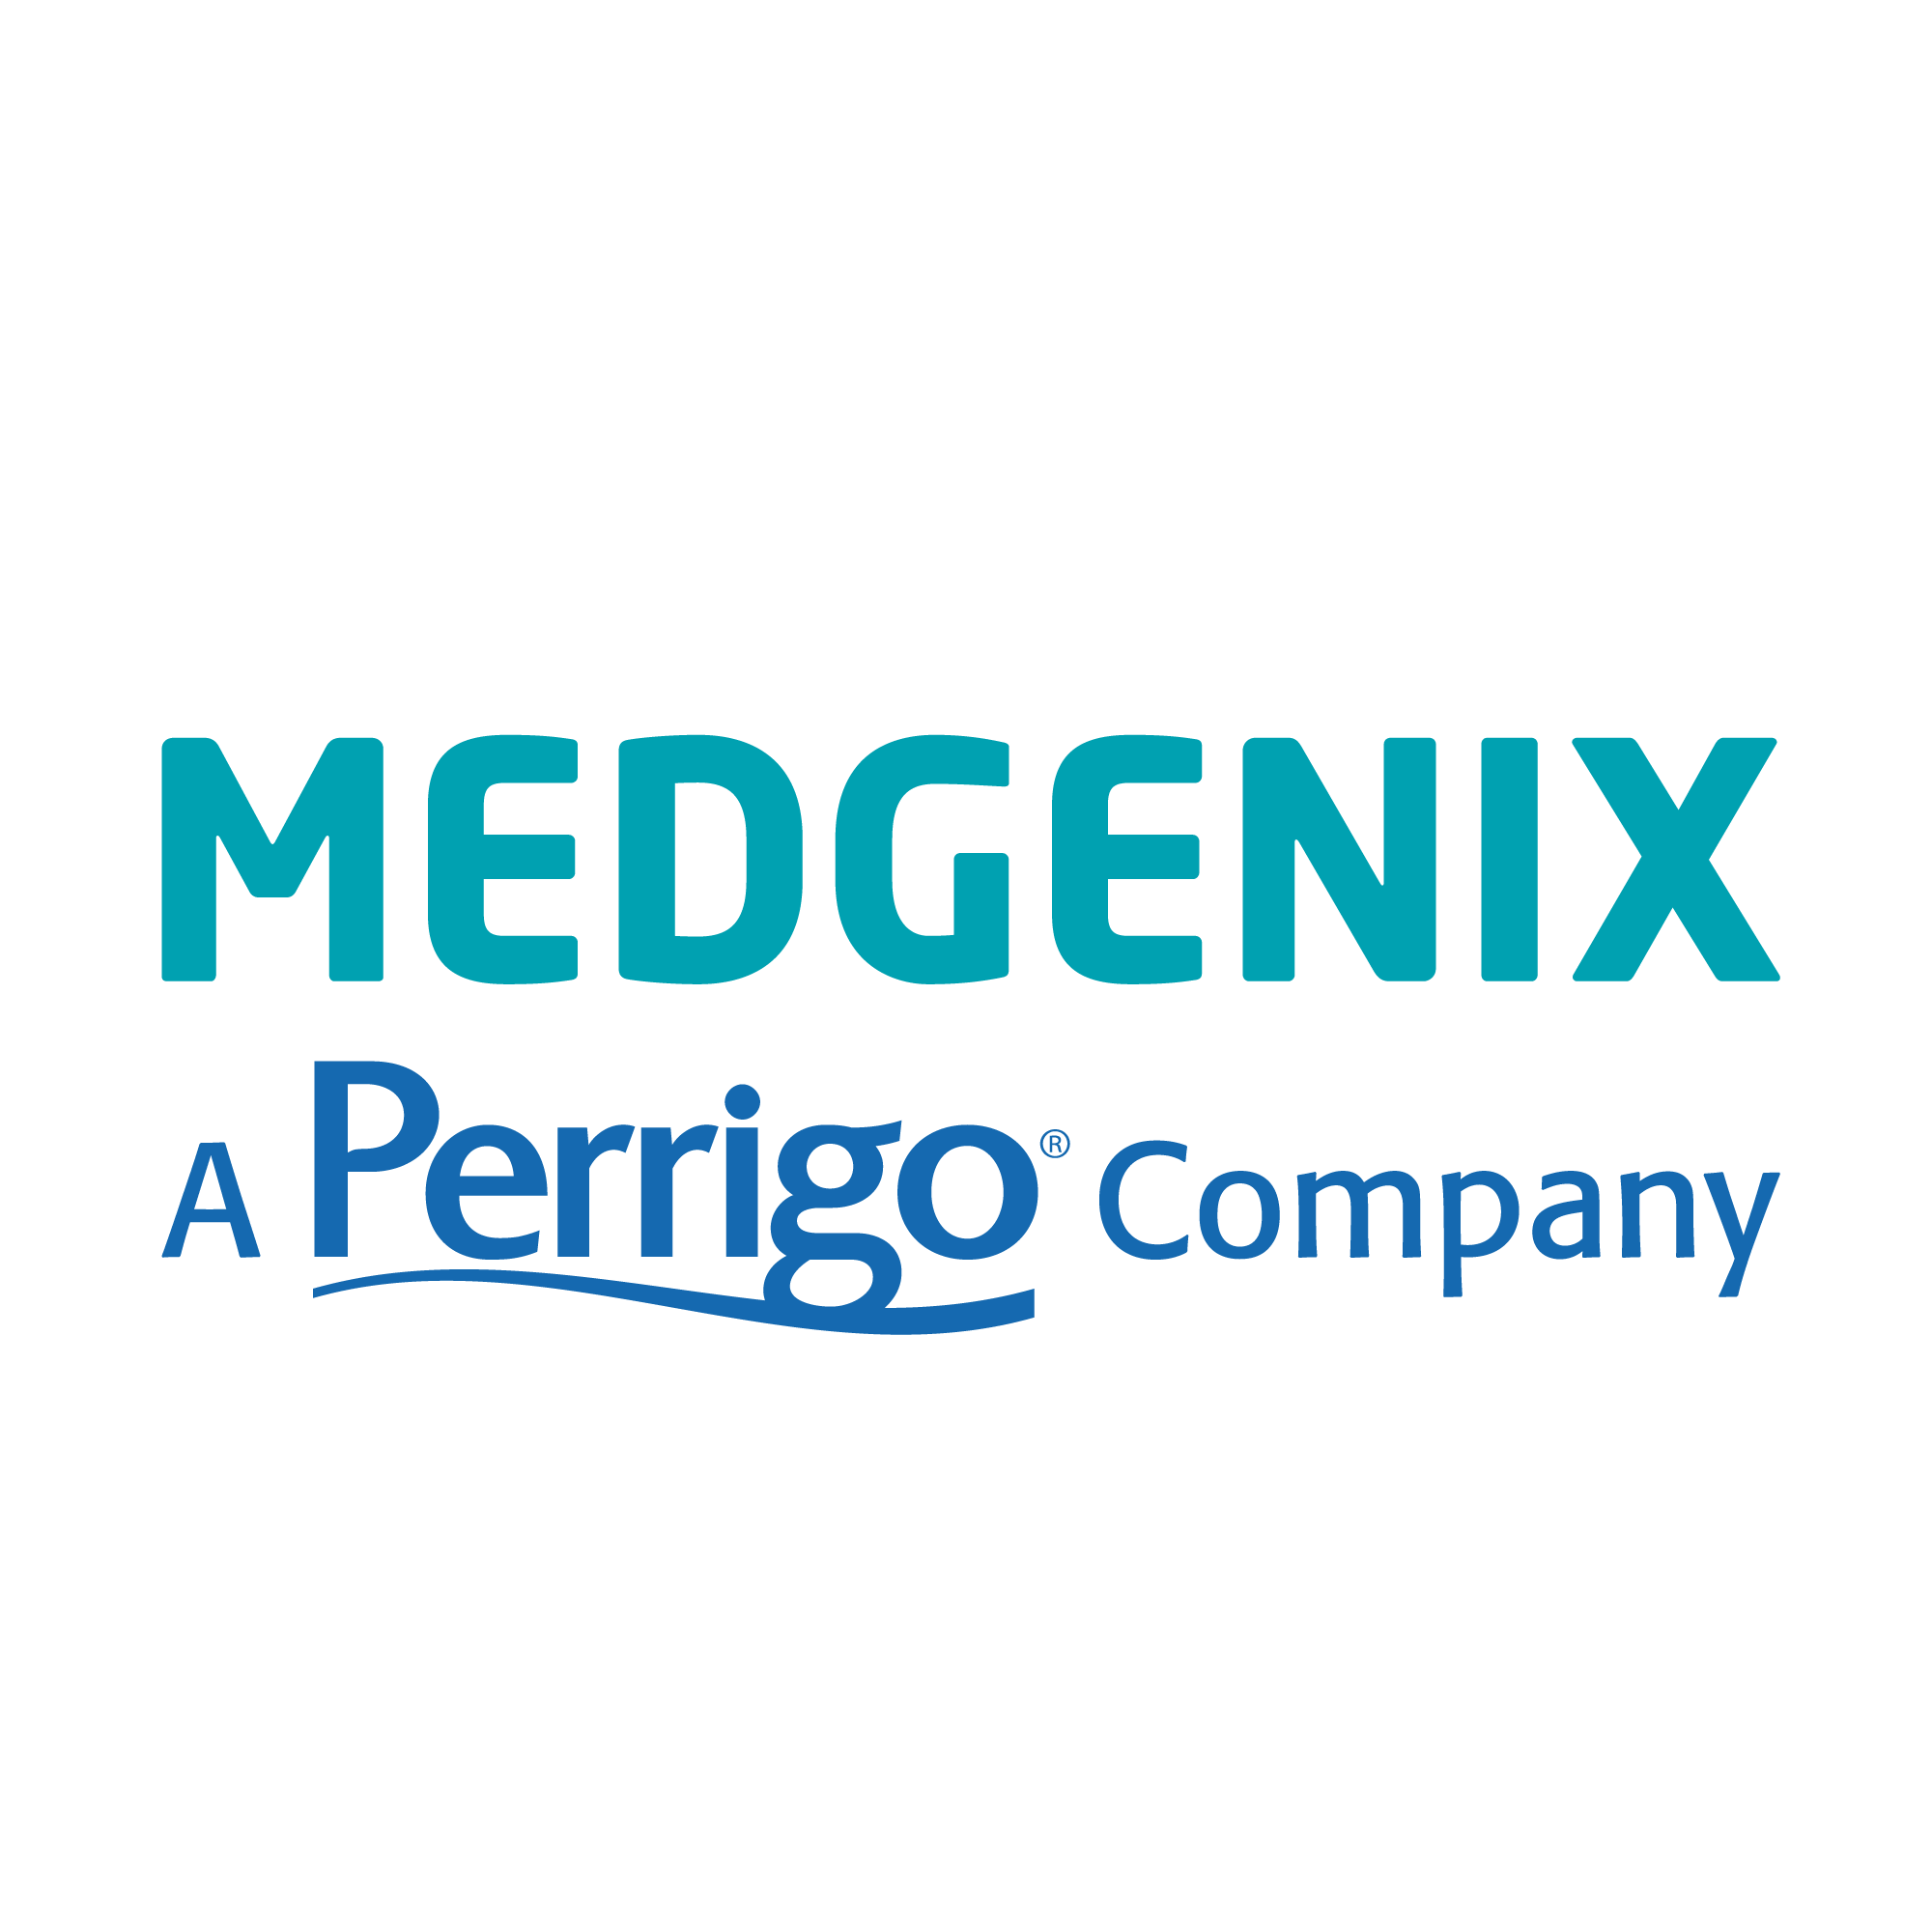 Medgenix logo